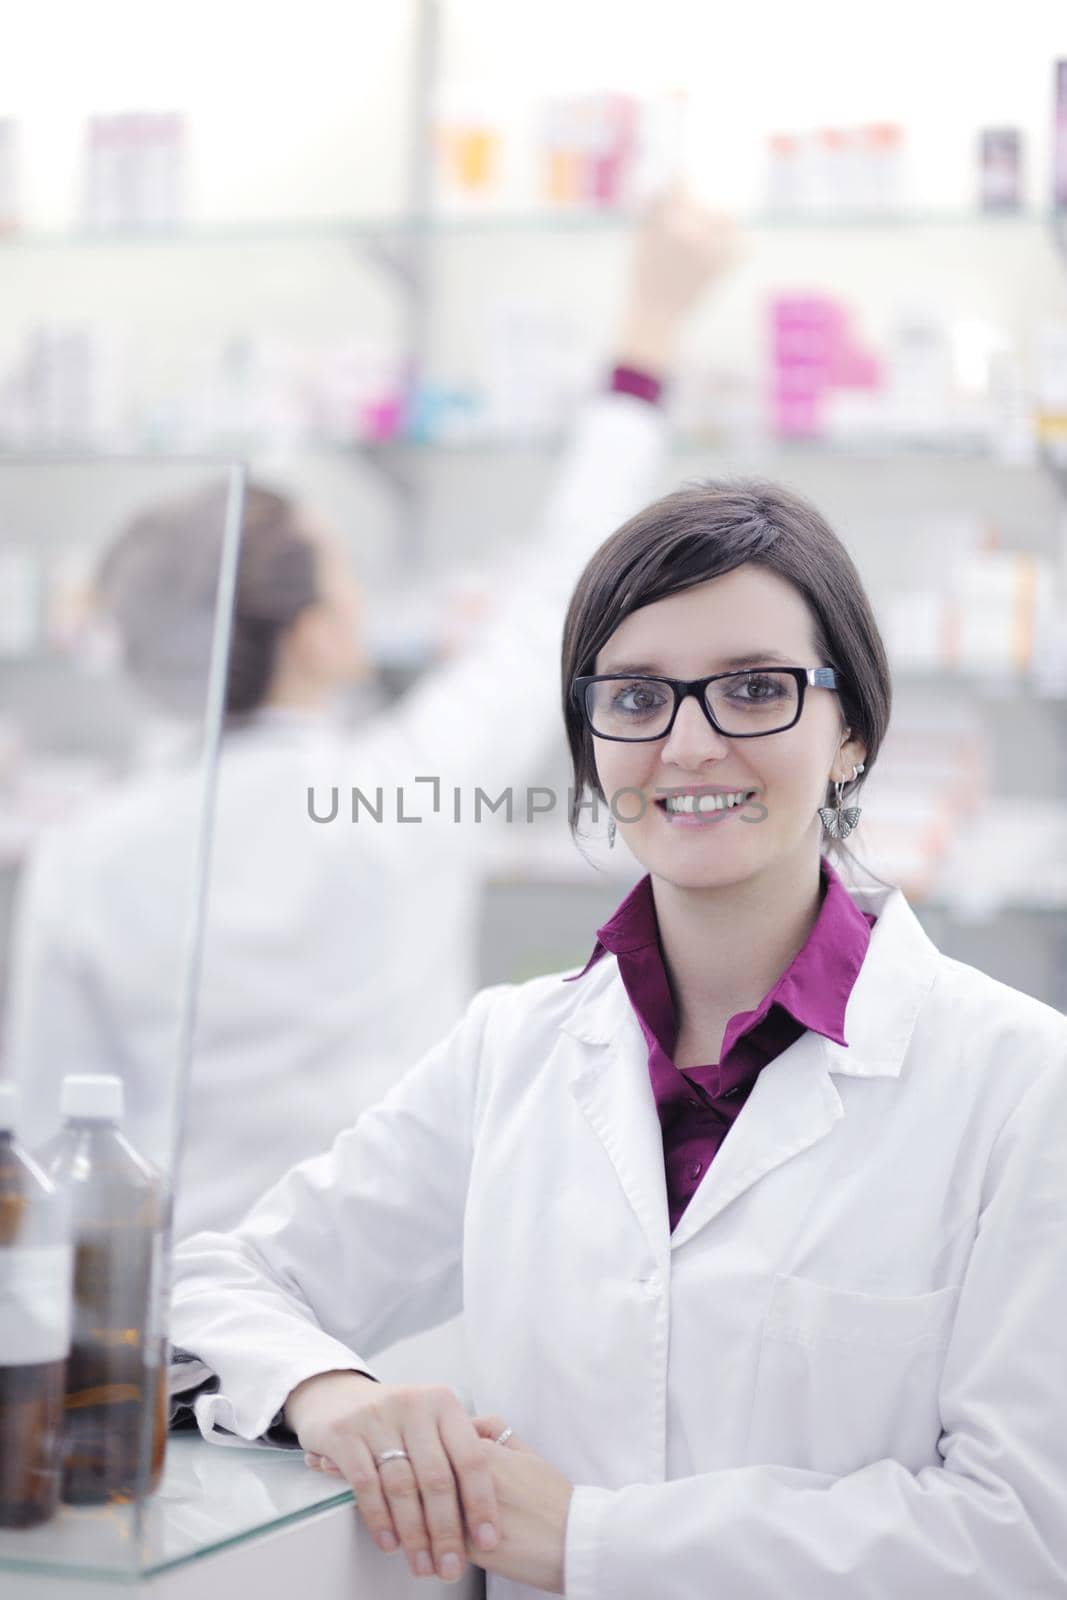 team of pharmacist chemist woman  in pharmacy drugstore by dotshock